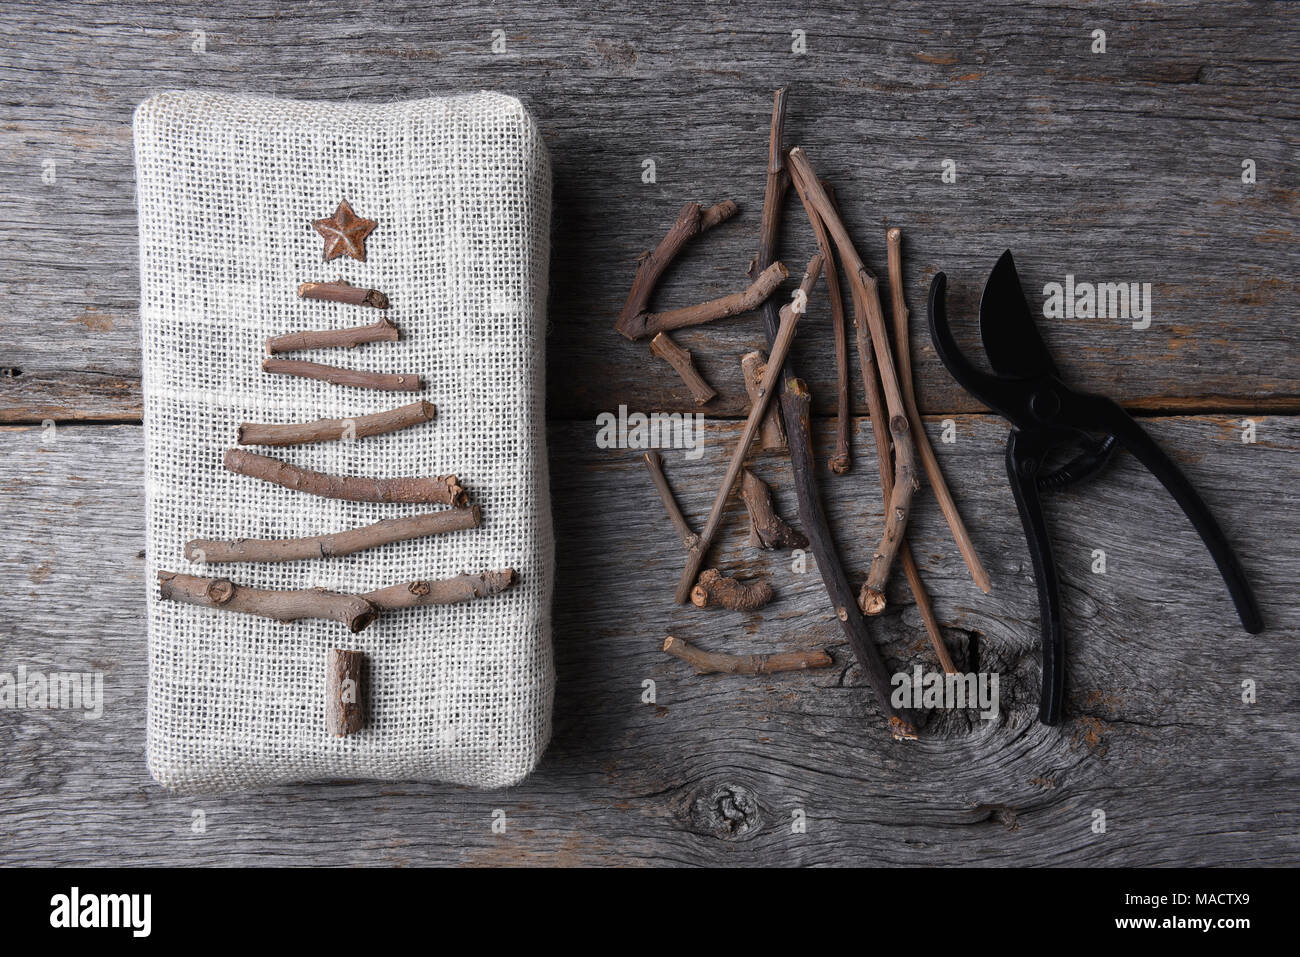 Passage tiré d'un cadeau de Noël enveloppé de toile avec une brindille arbre et star. Assortiment de brindilles et les cisaillements sont également sur la table de bois rustique. Banque D'Images